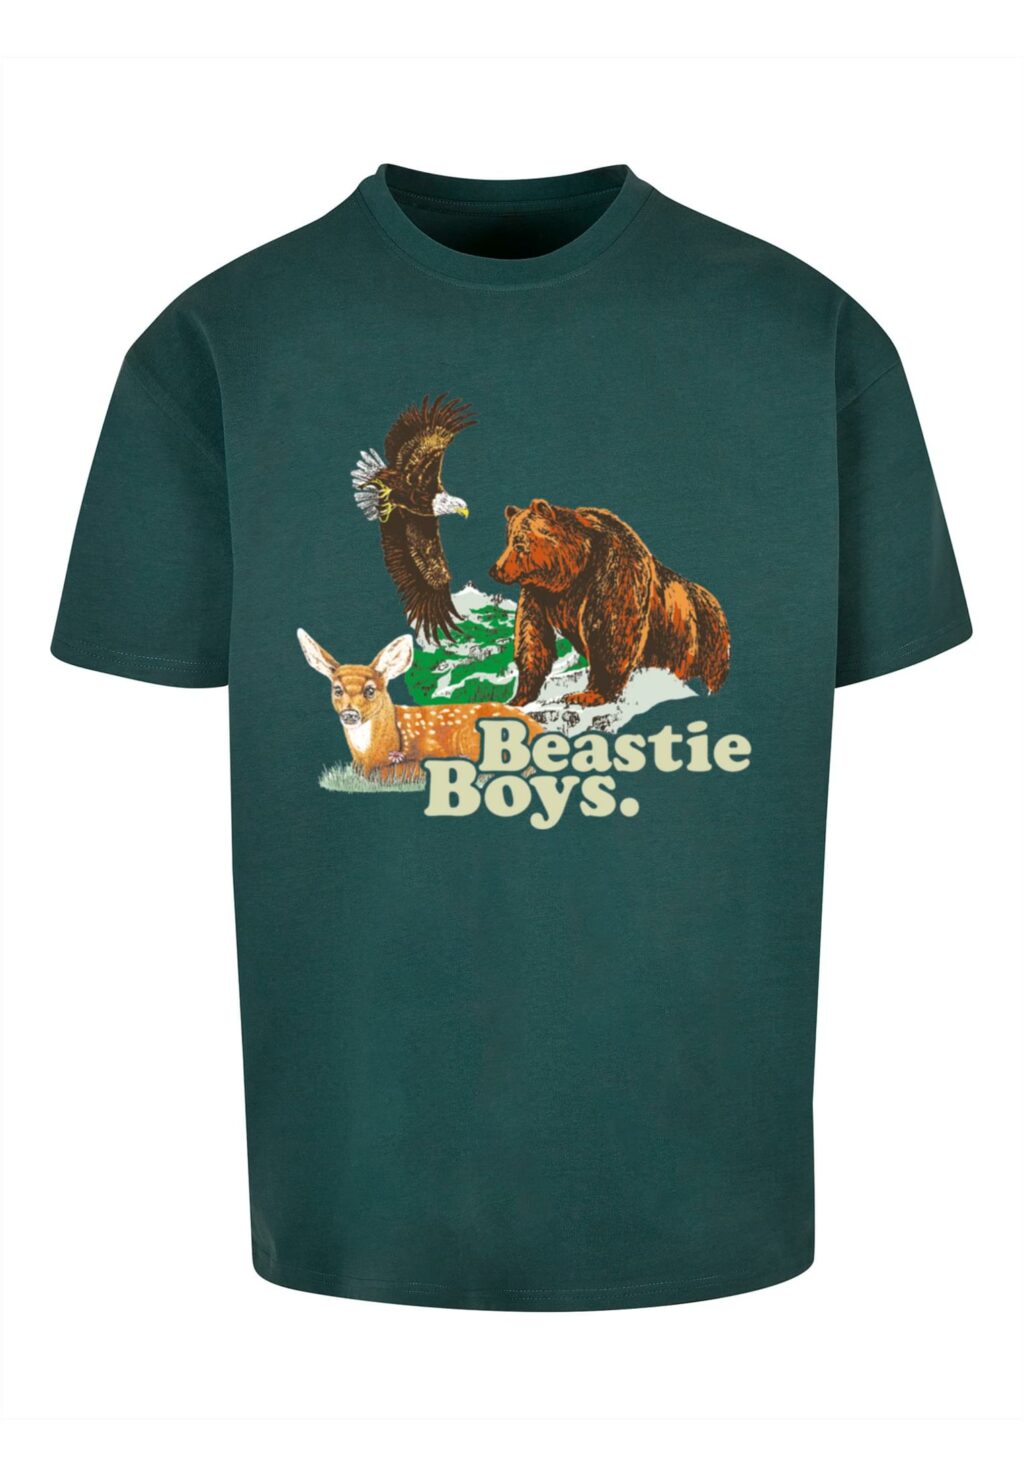 Beastie Boys Animal Tee bottlegreen MT3129